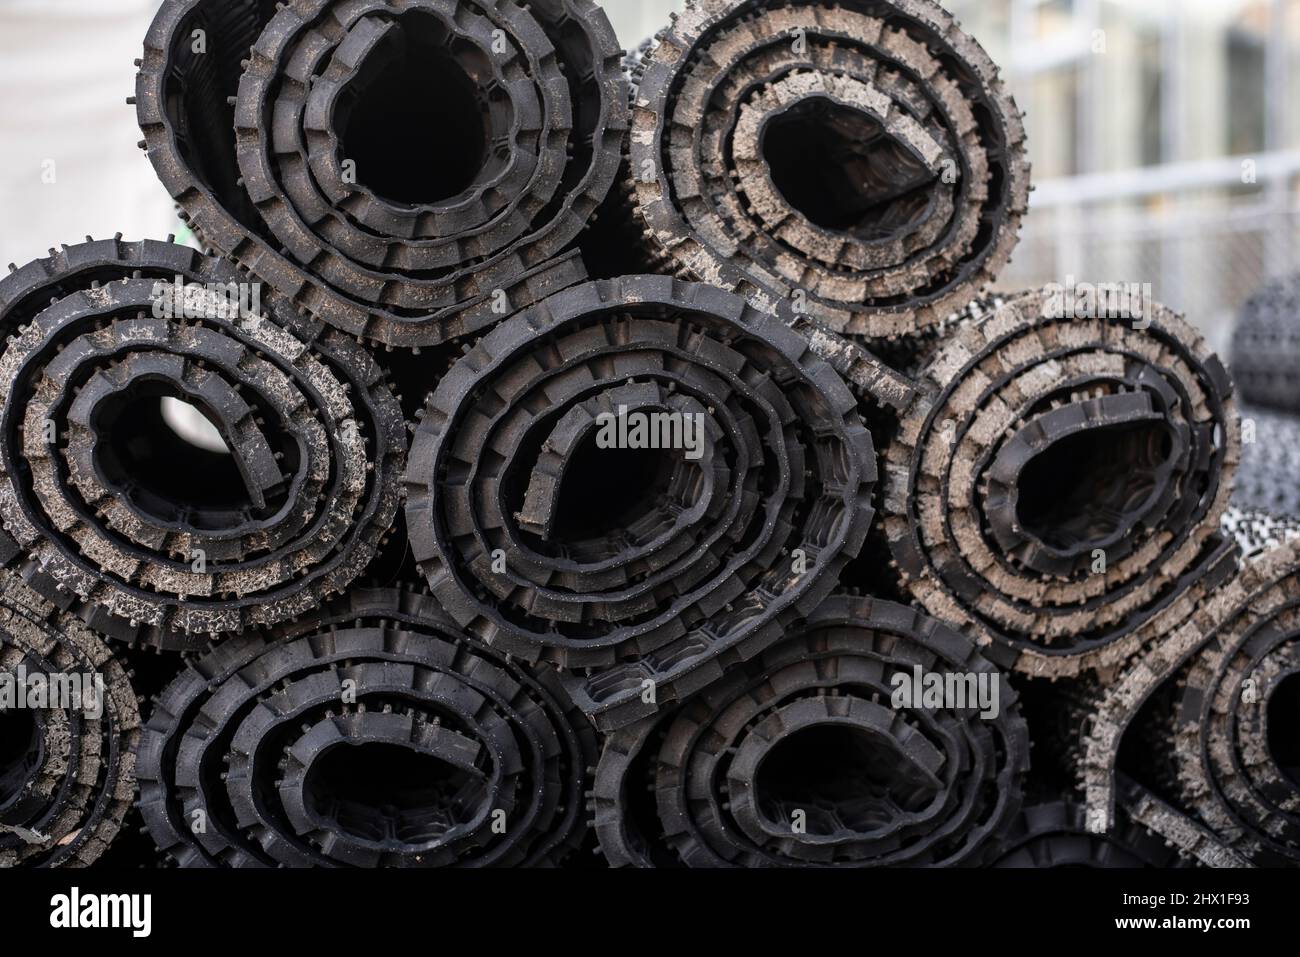 Nahaufnahme von gestapelten schwarzen Gummimatten, die zur Lagerung  aufgerollt sind Stockfotografie - Alamy